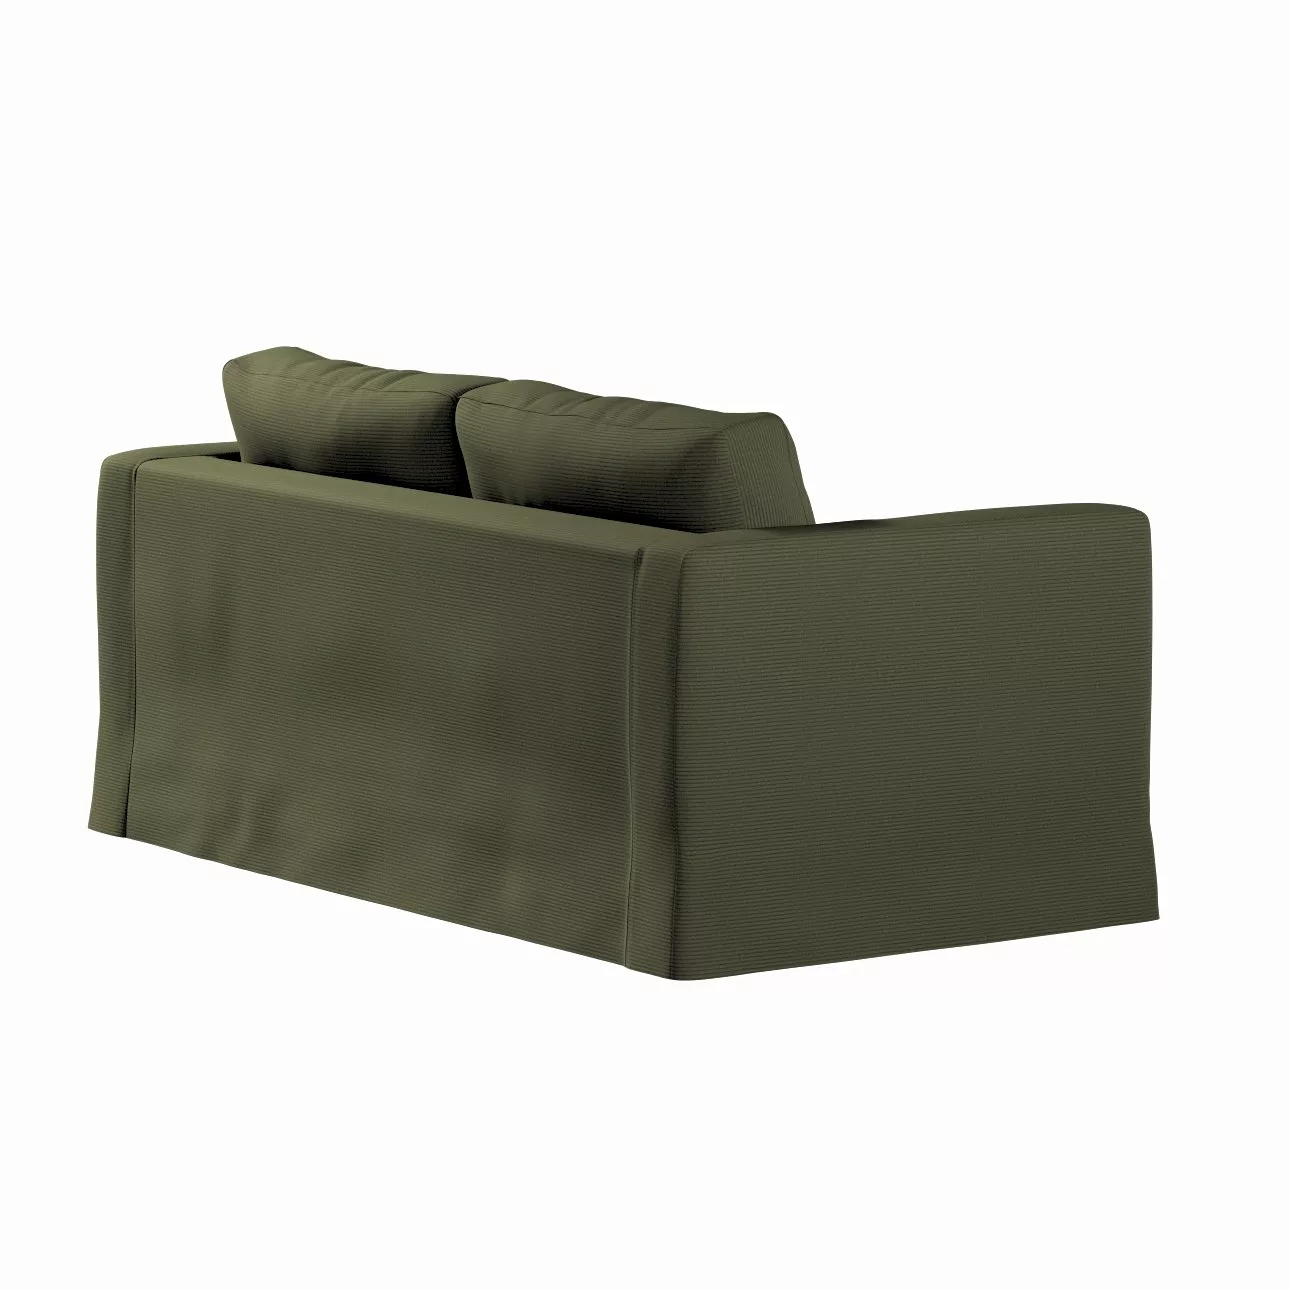 Bezug für Karlstad 2-Sitzer Sofa nicht ausklappbar, lang, olivgrün, Sofahus günstig online kaufen